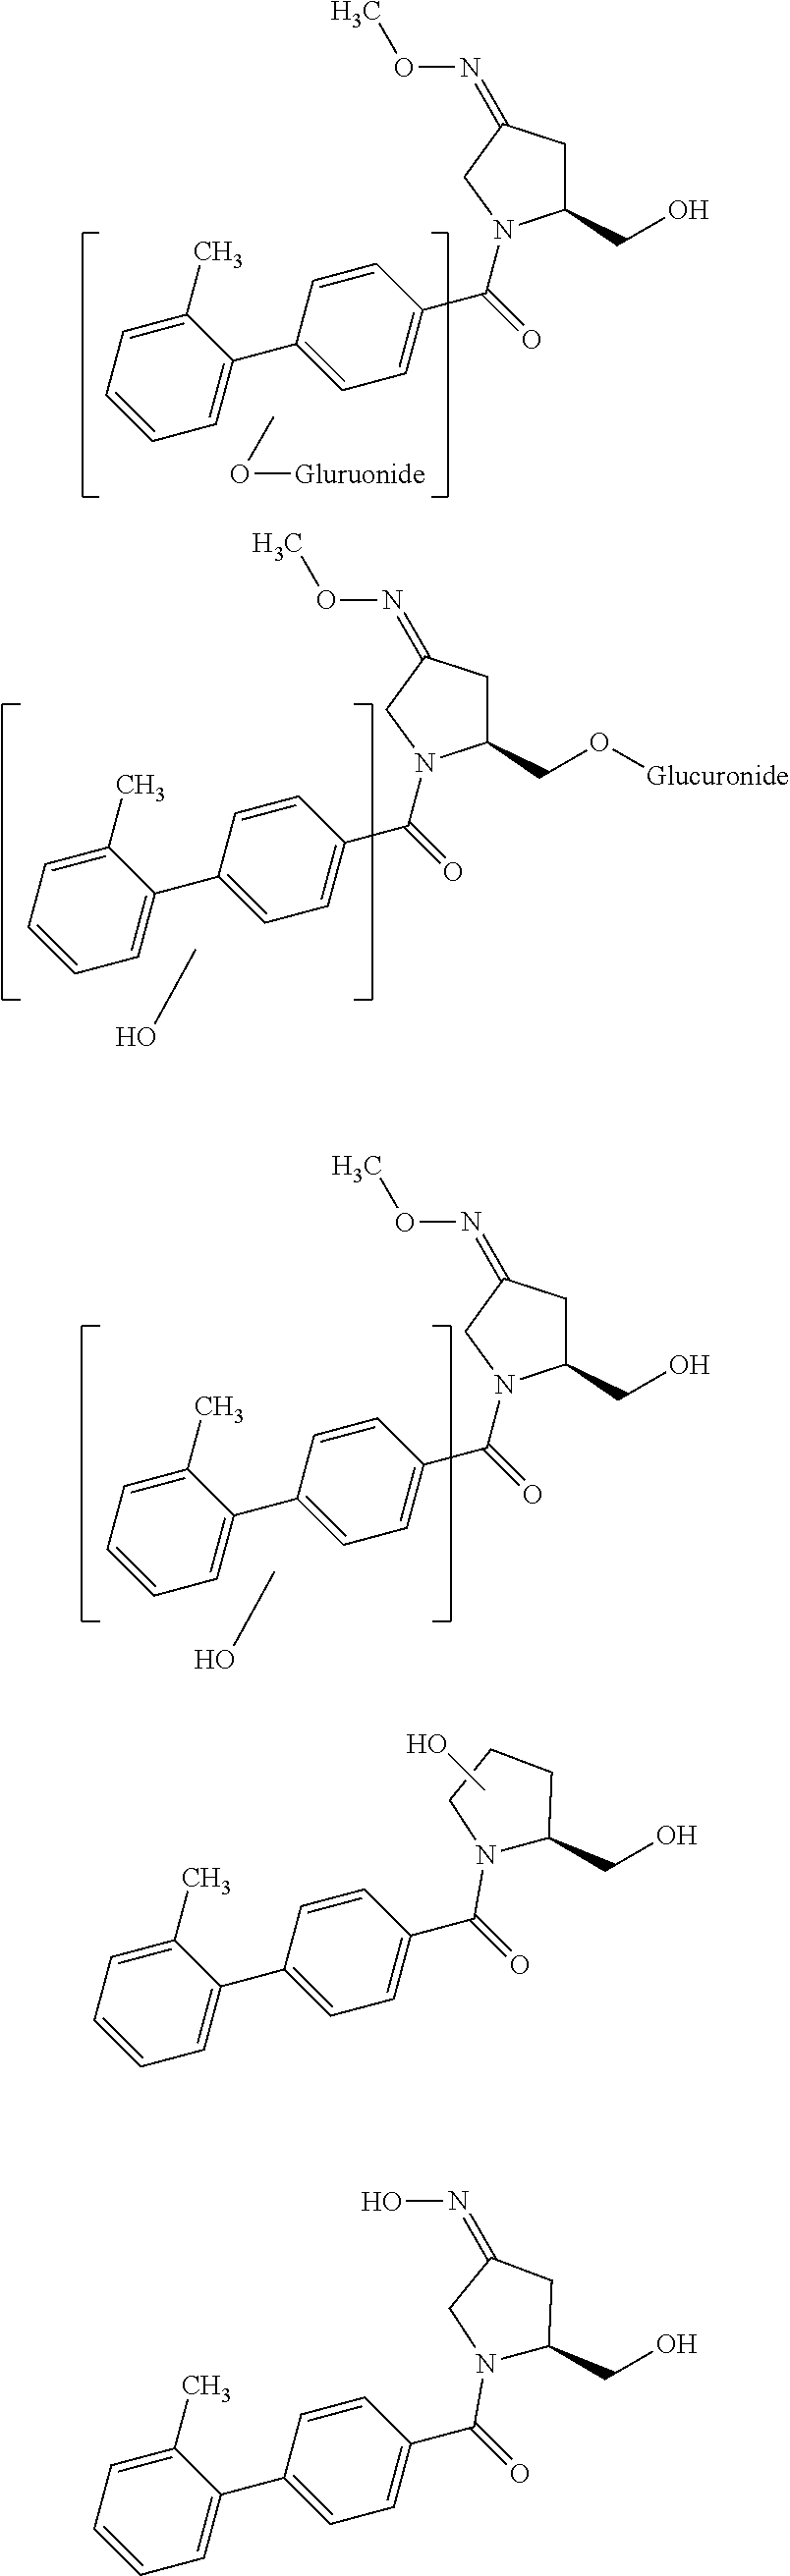 Pyrrolidine derivatives as oxytocin/vasopressin v1a receptors antagonists